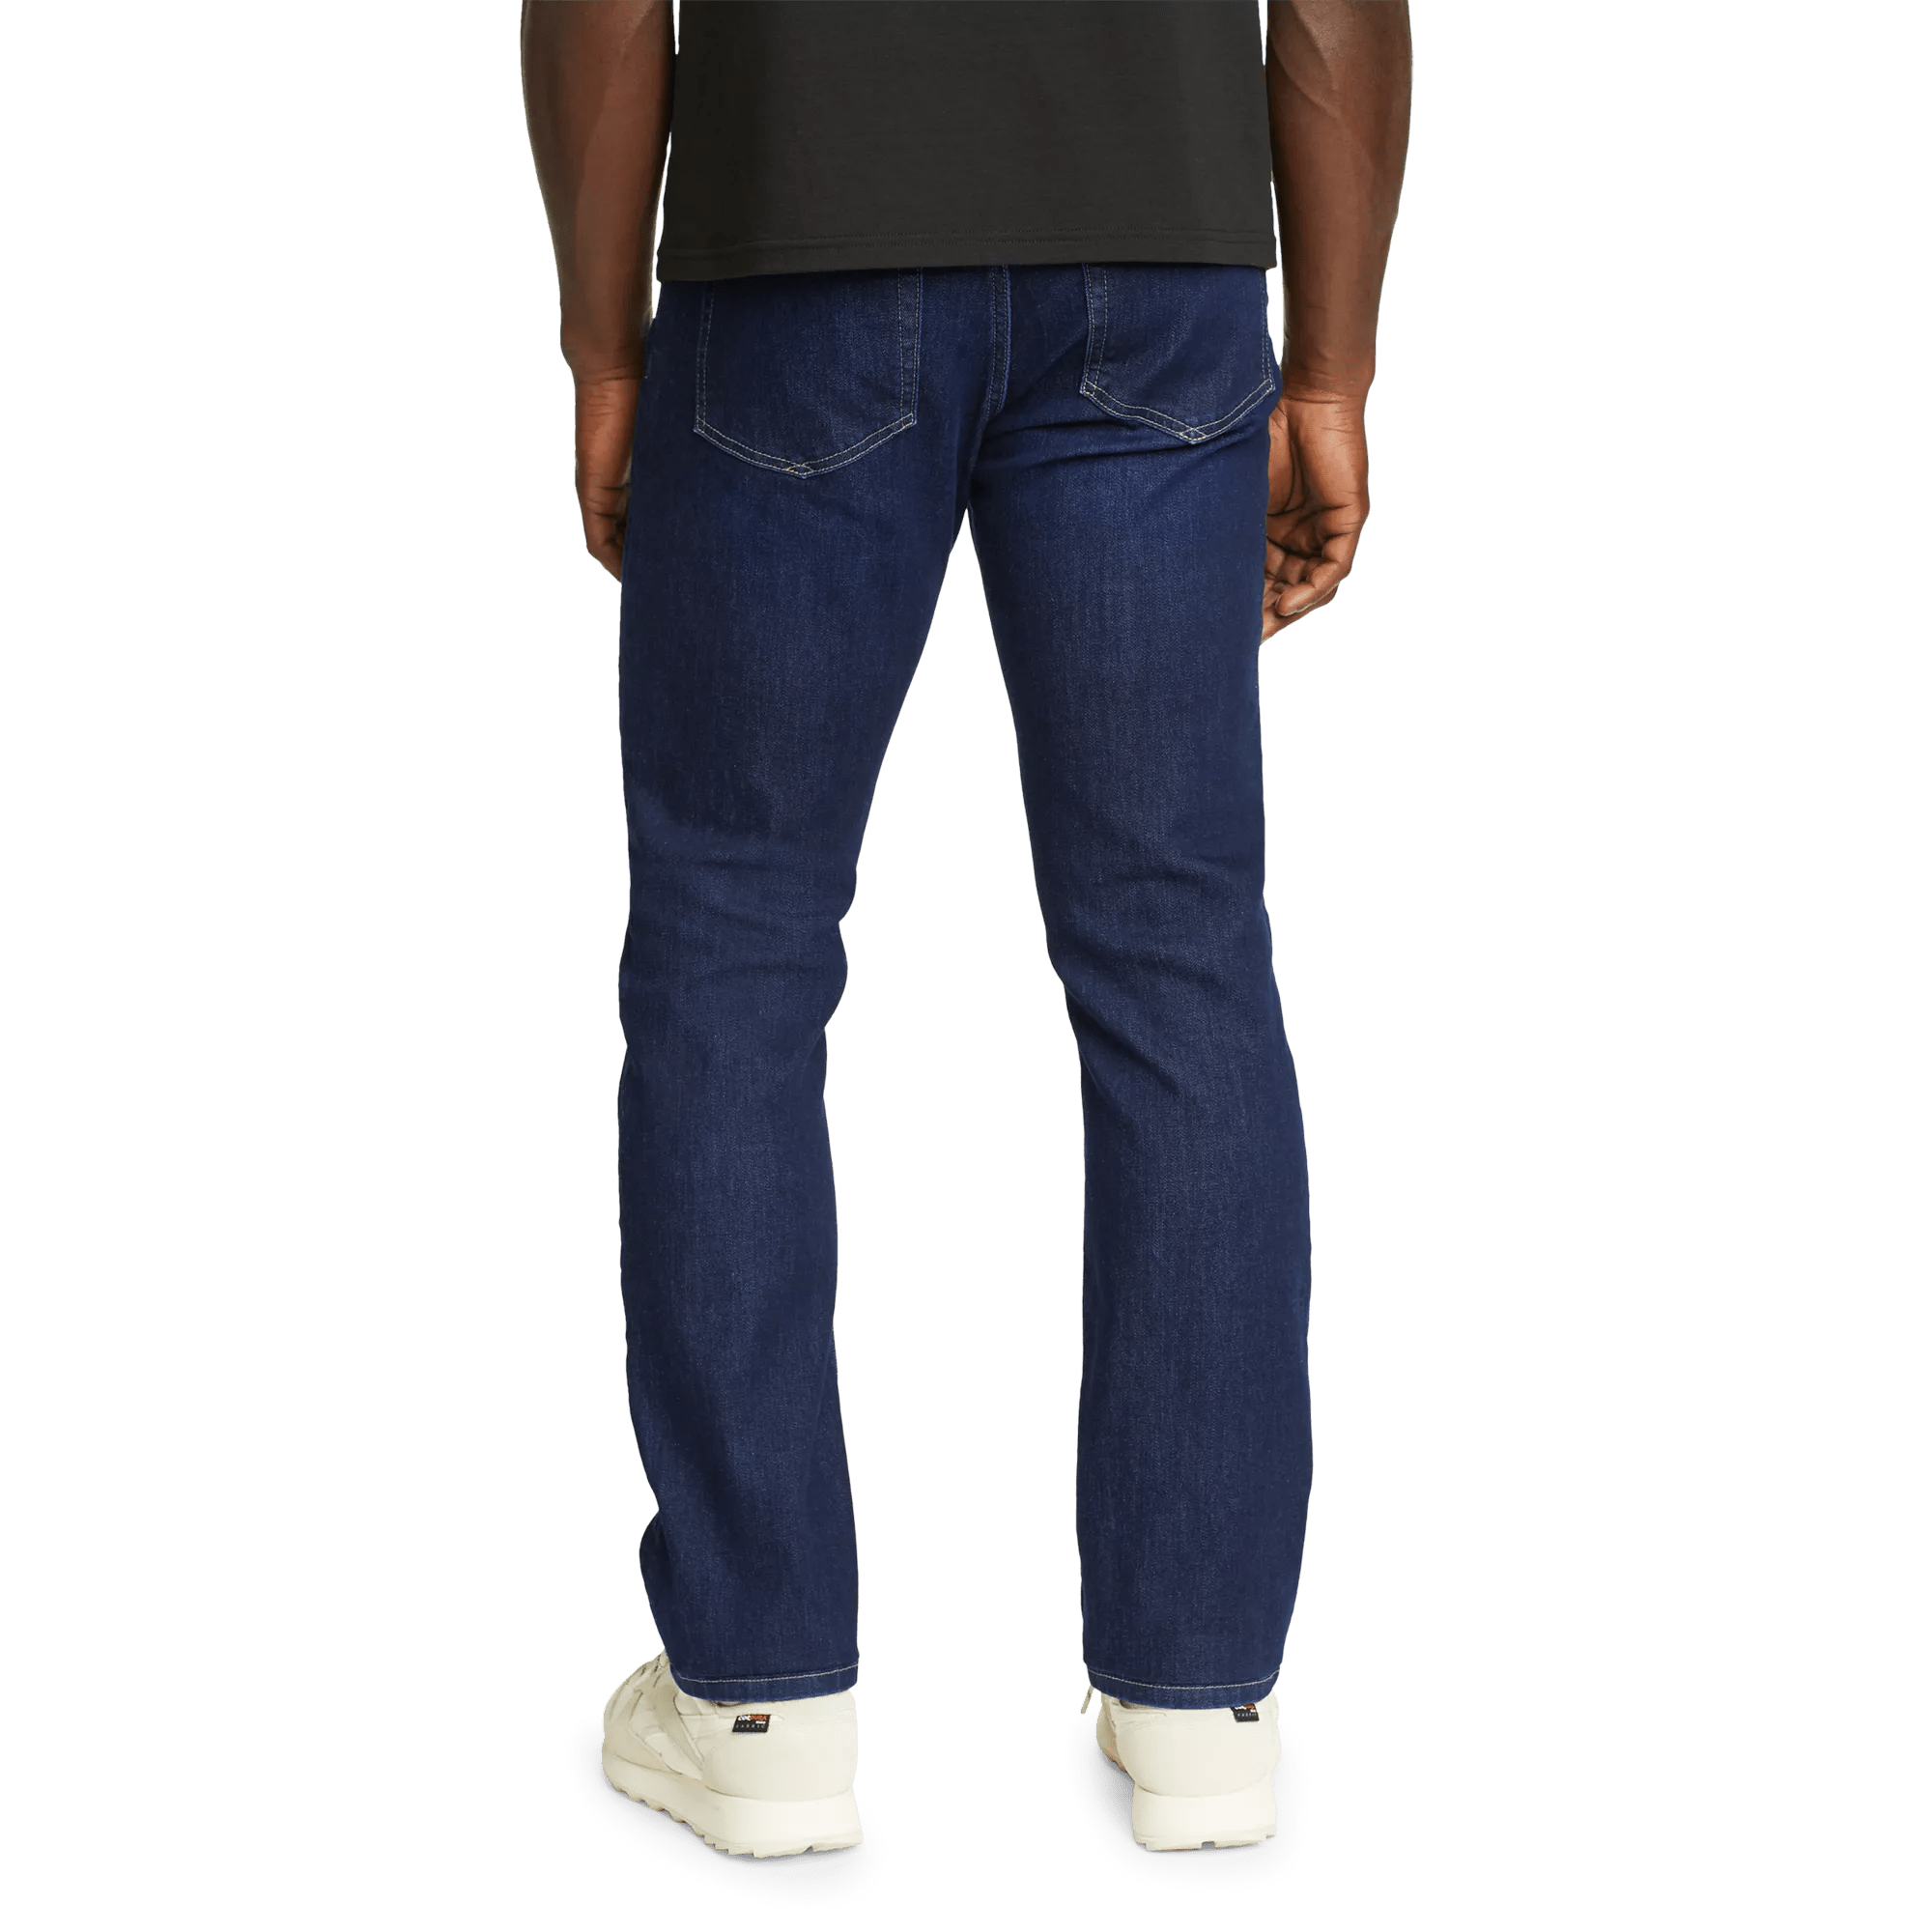 Voyager Flex 2.0 Jeans